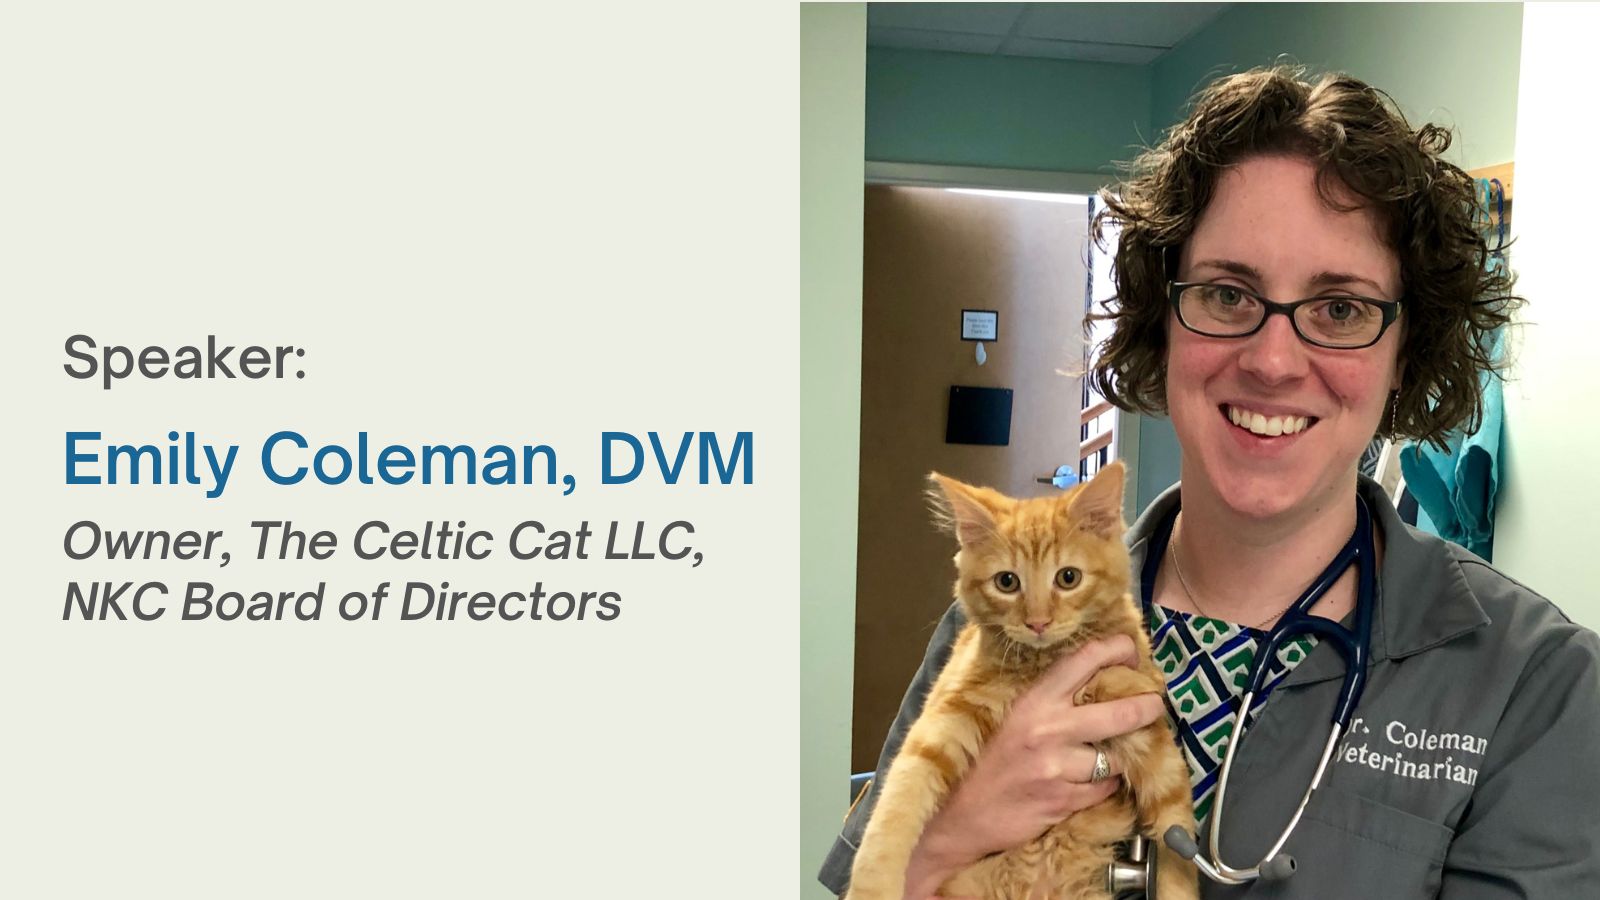 Speaker Emily Coleman, DVM holding orange kitten.